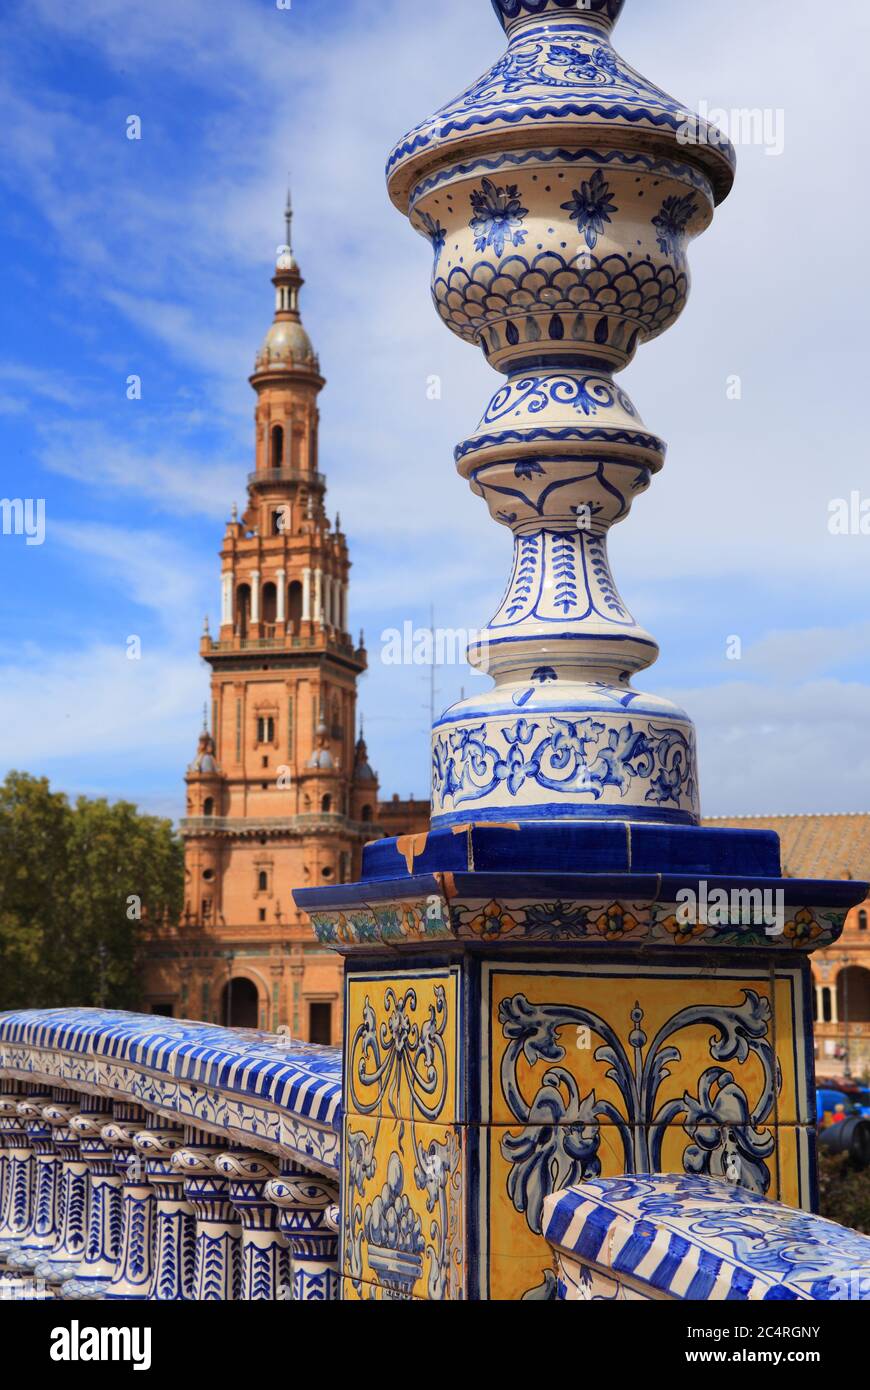 Particolare di un bellissimo ponte ornato decorato con piastrelle in ceramica nella storica Plaza de Espana o Piazza di Spagna. Siviglia, Spagna. Foto Stock